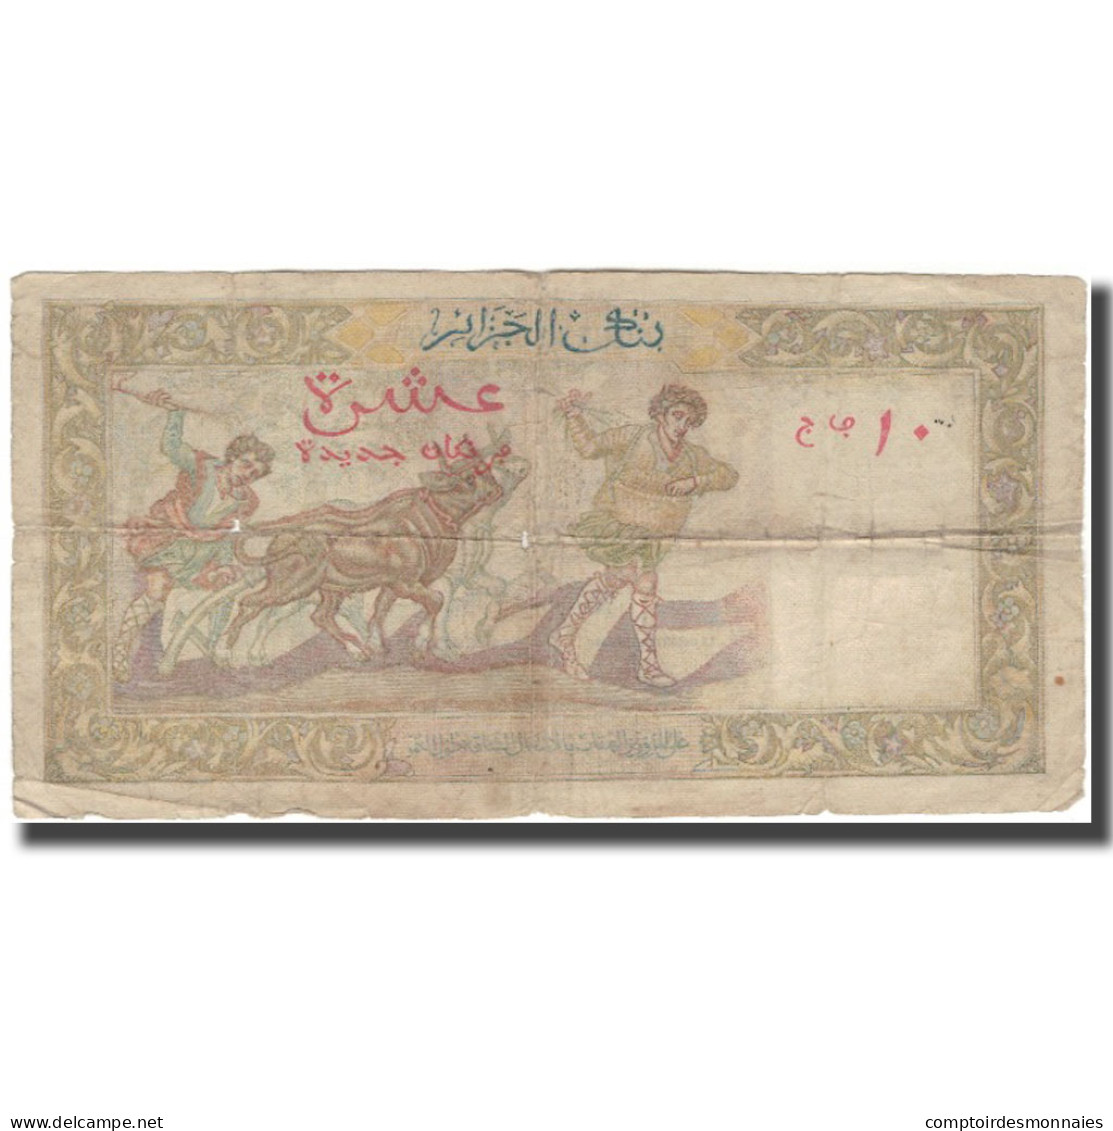 Billet, Algeria, 10 Nouveaux Francs, 1961-02-10, KM:119a, B+ - Algeria